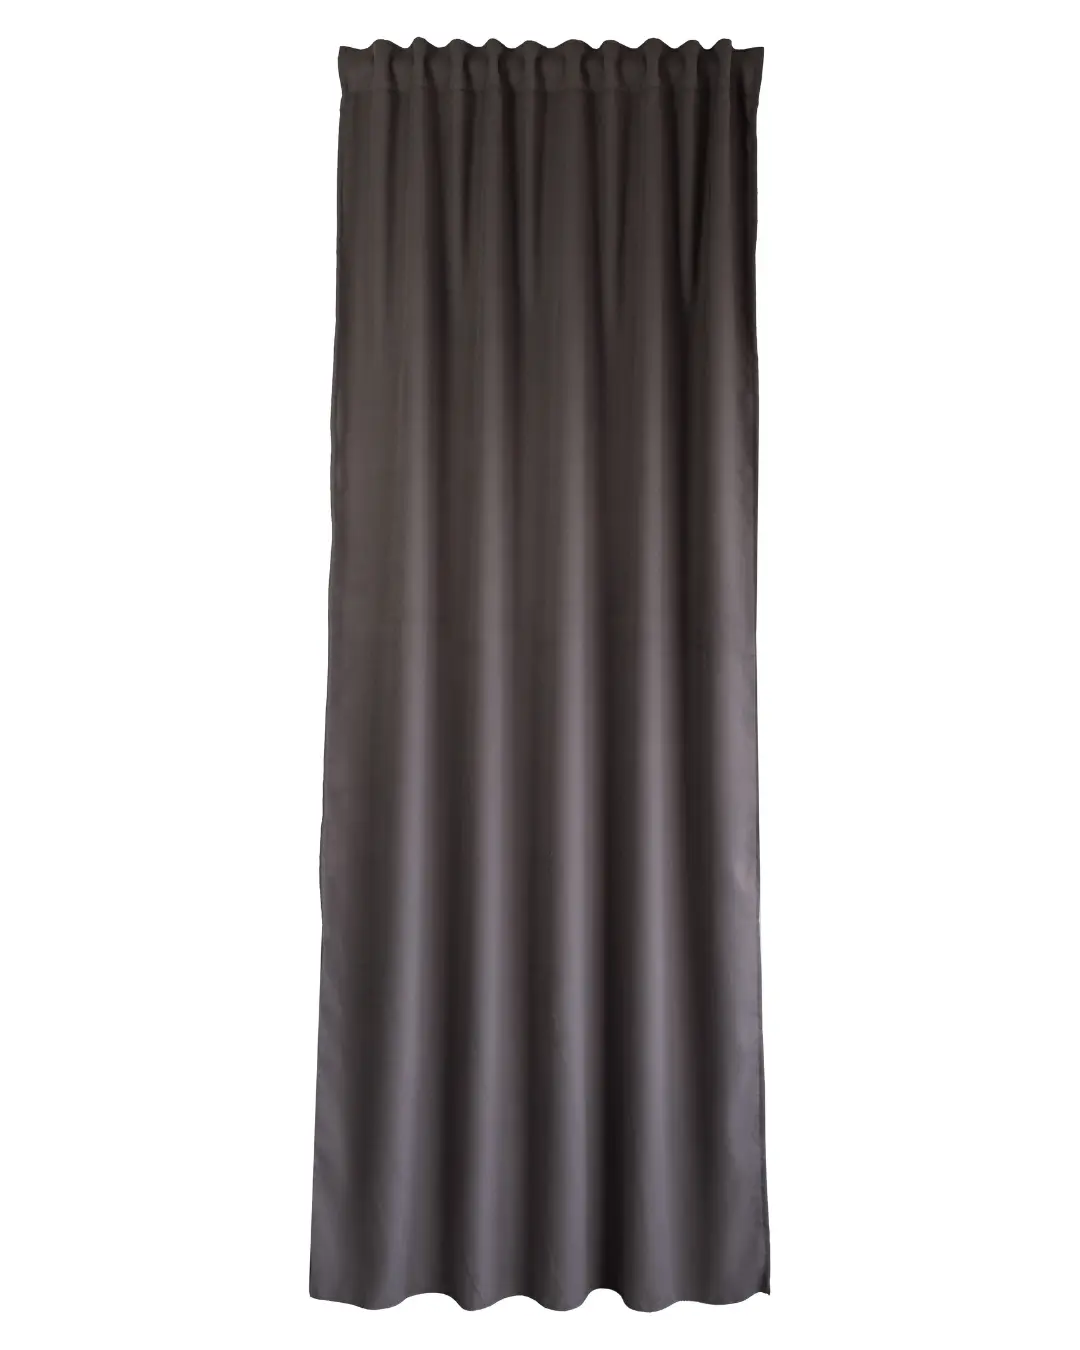 Cortina opaca acústica belice con motivo liso marrón de 270x300 cm